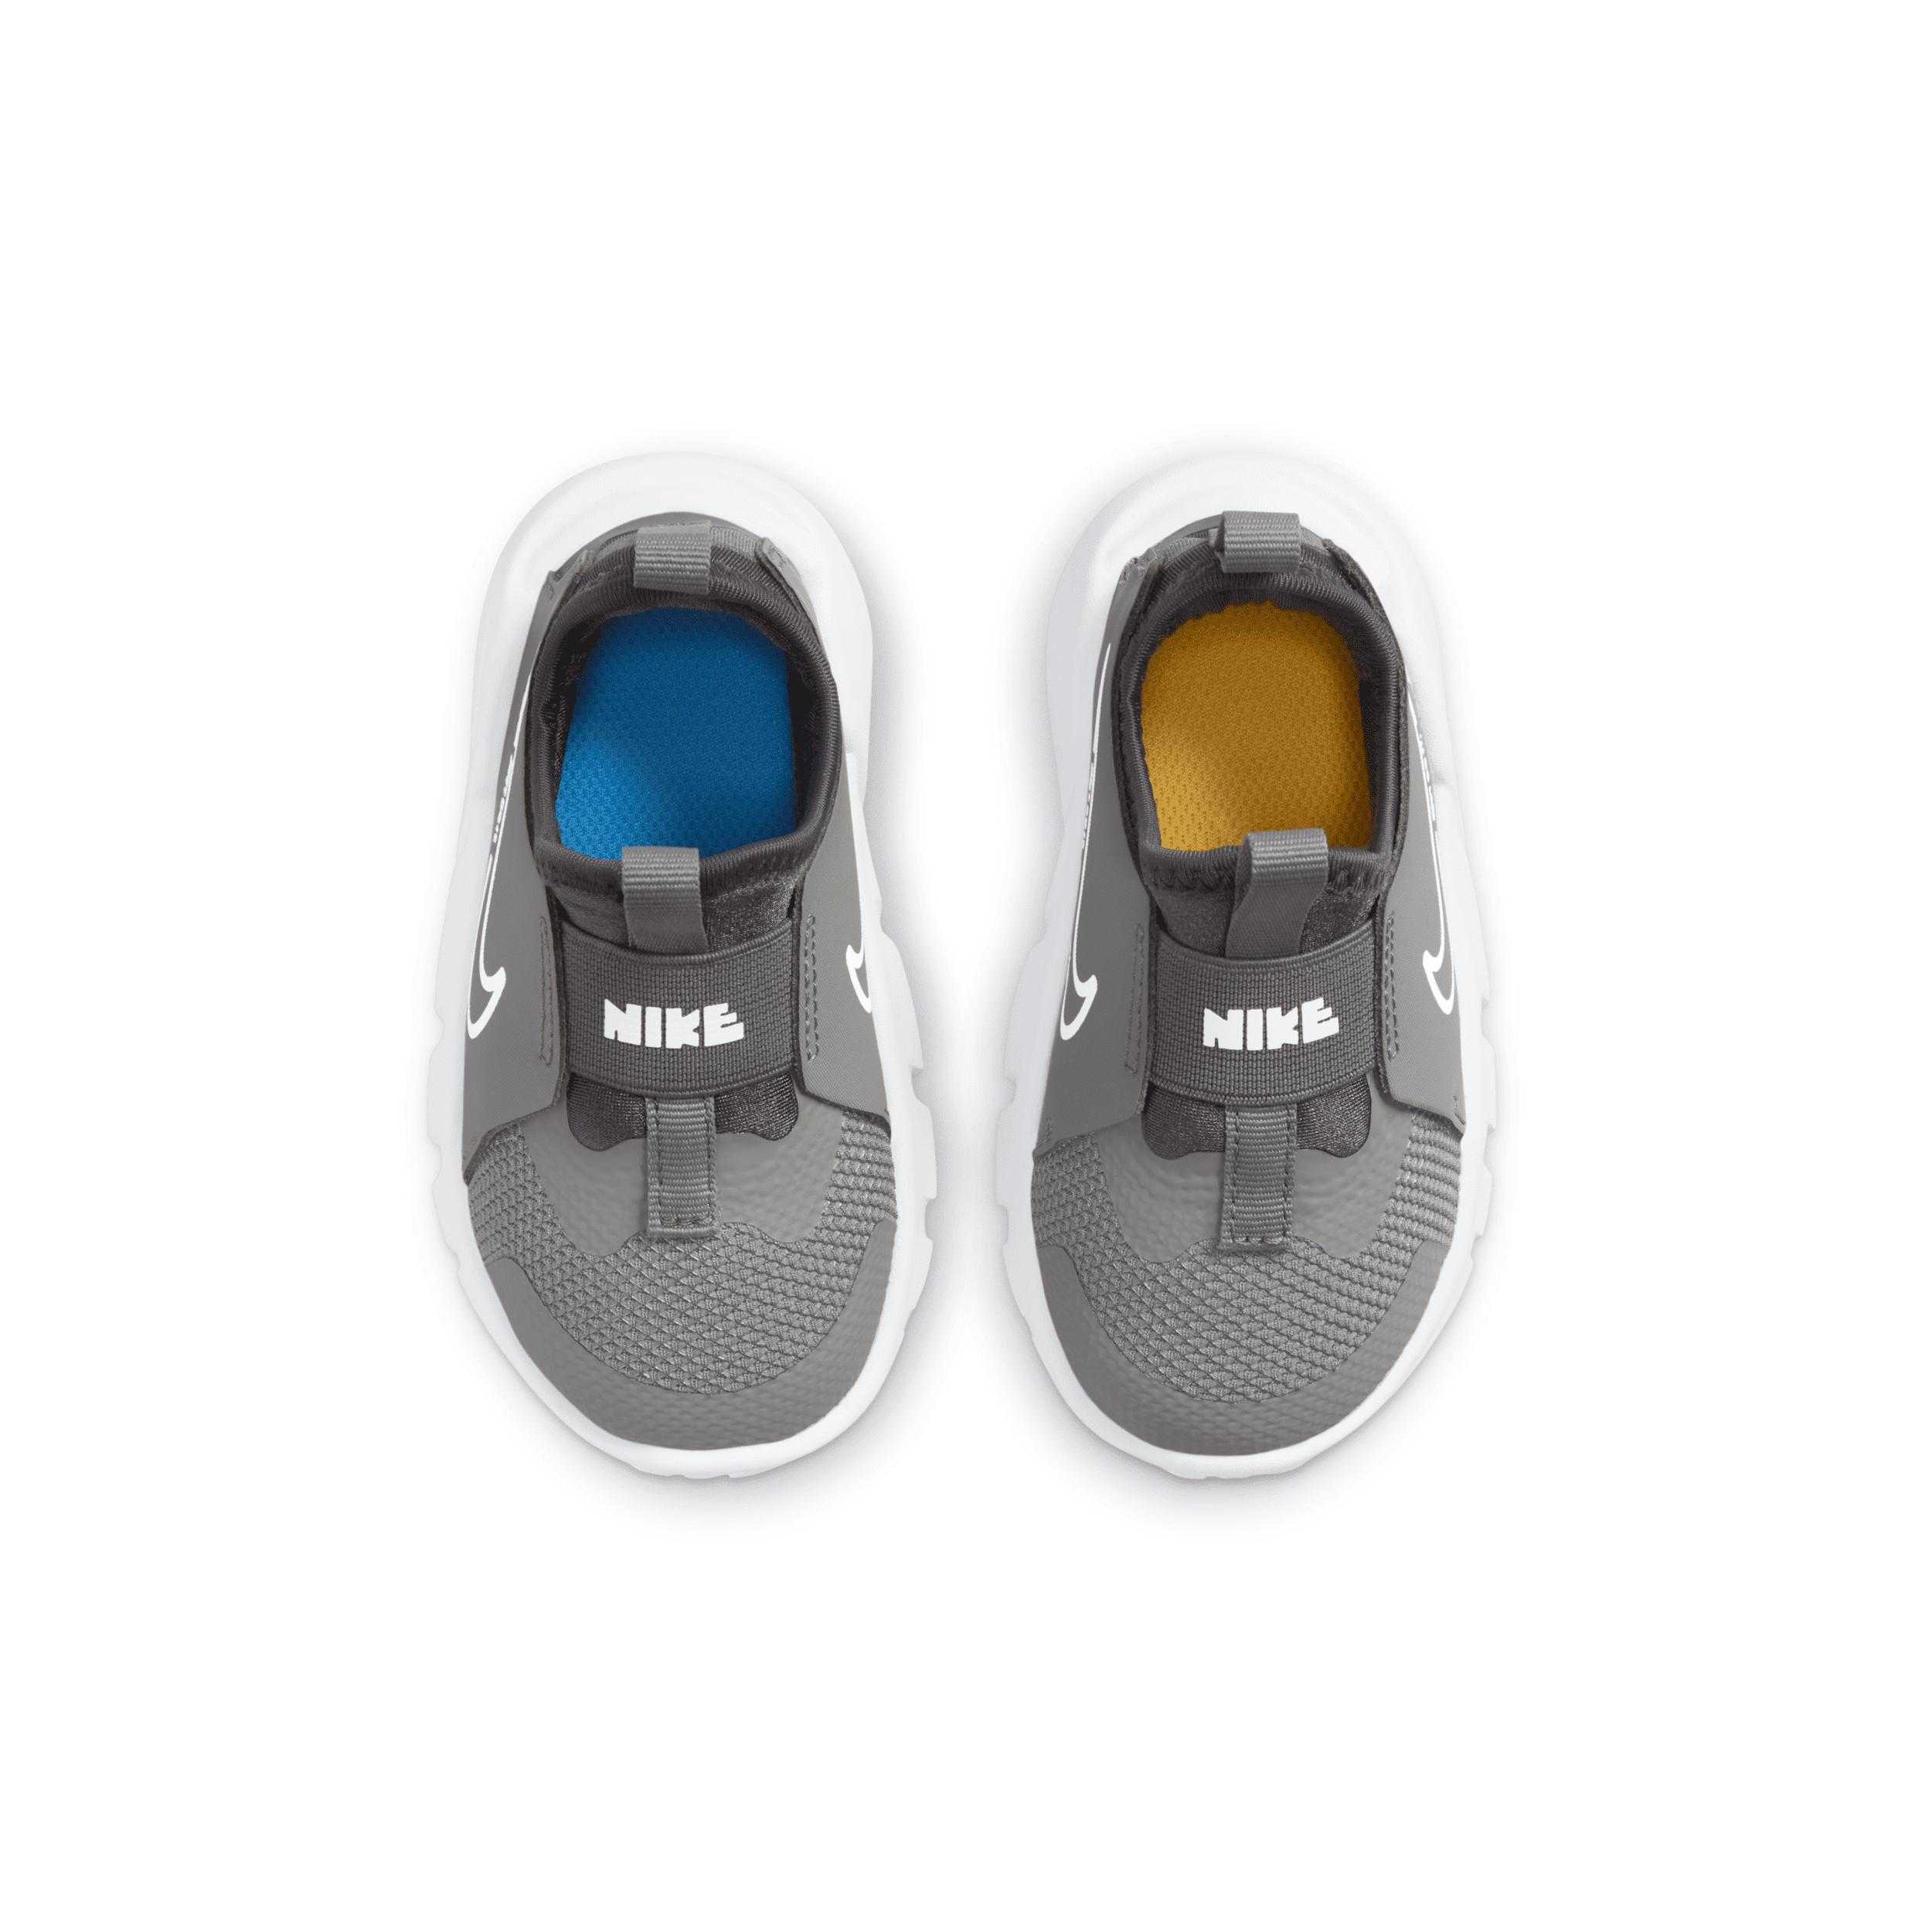 Nike Kids Flex Runner 2 Slip-On Running Shoe Product Image